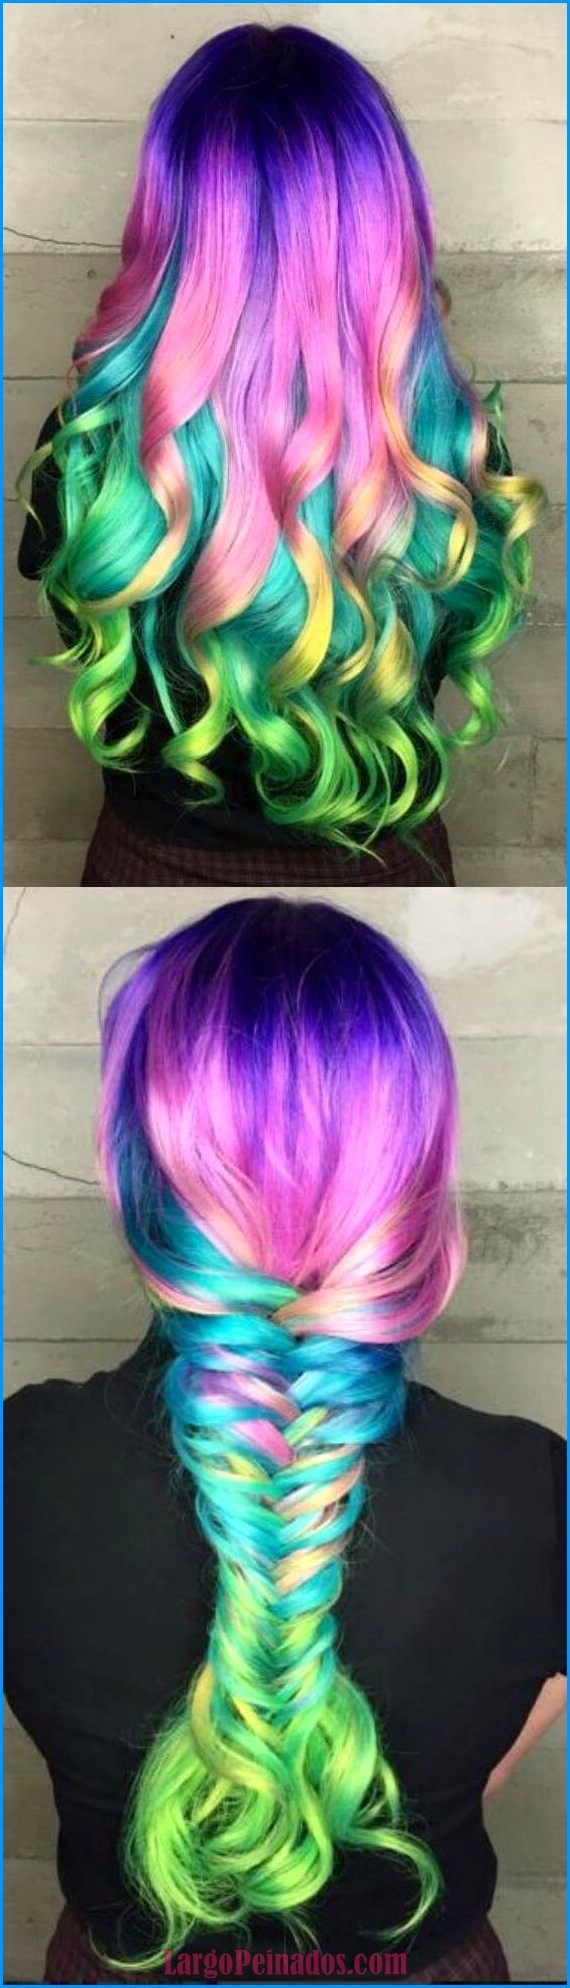 peinados de colores 6